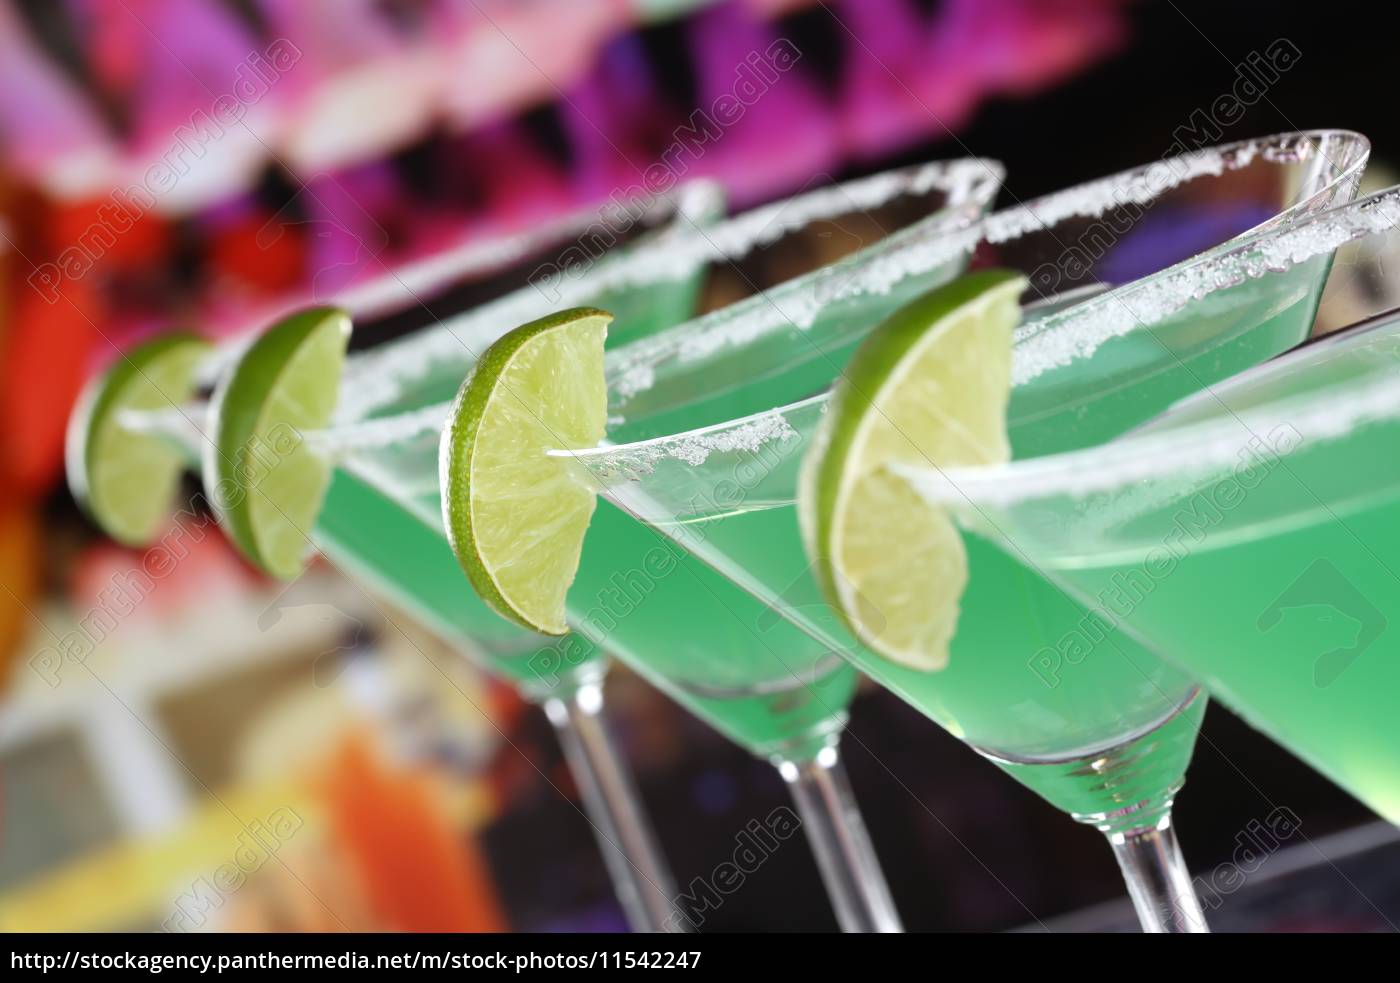 Grüne Martini Cocktails in Gläsern in einer Bar - Lizenzfreies Bild ...